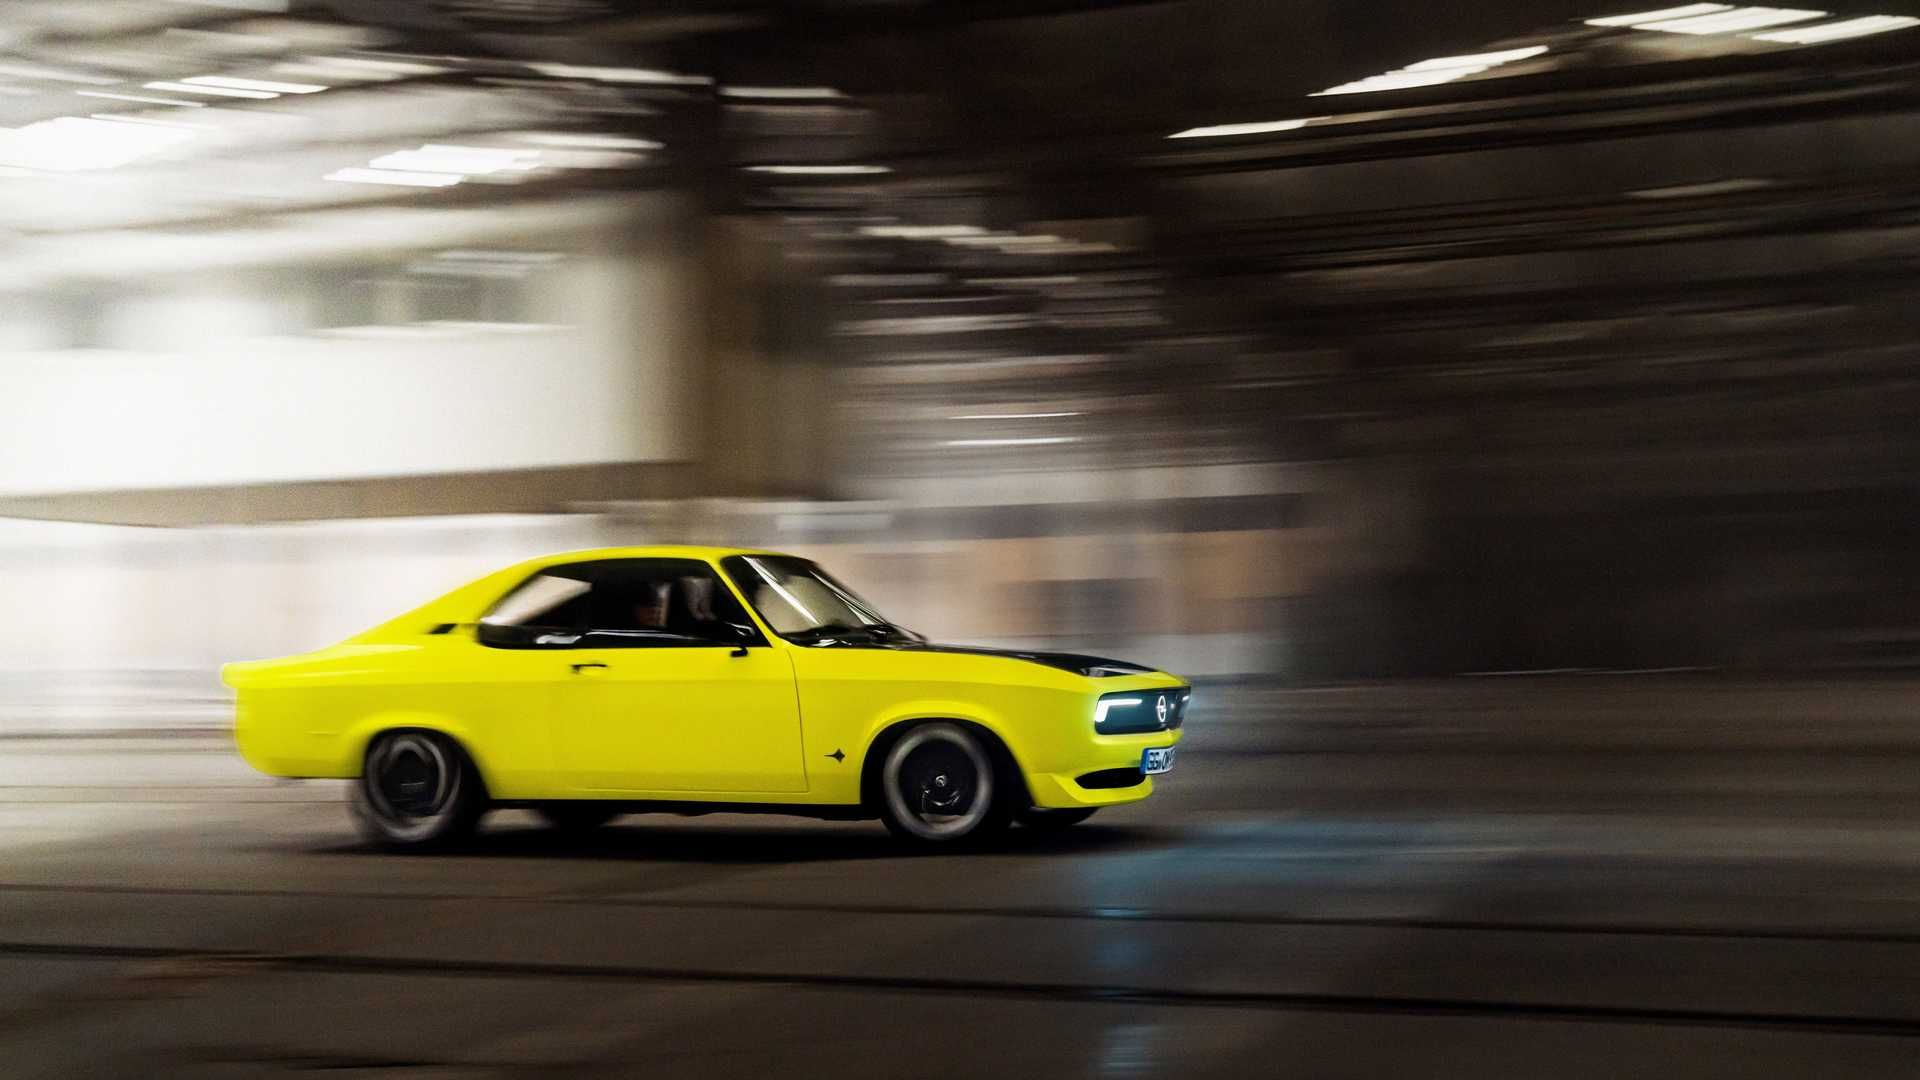 اوپل مانتا جی اس ای الکترومود / Opel Manta GSe ElektroMOD زرد رنگ در جاده